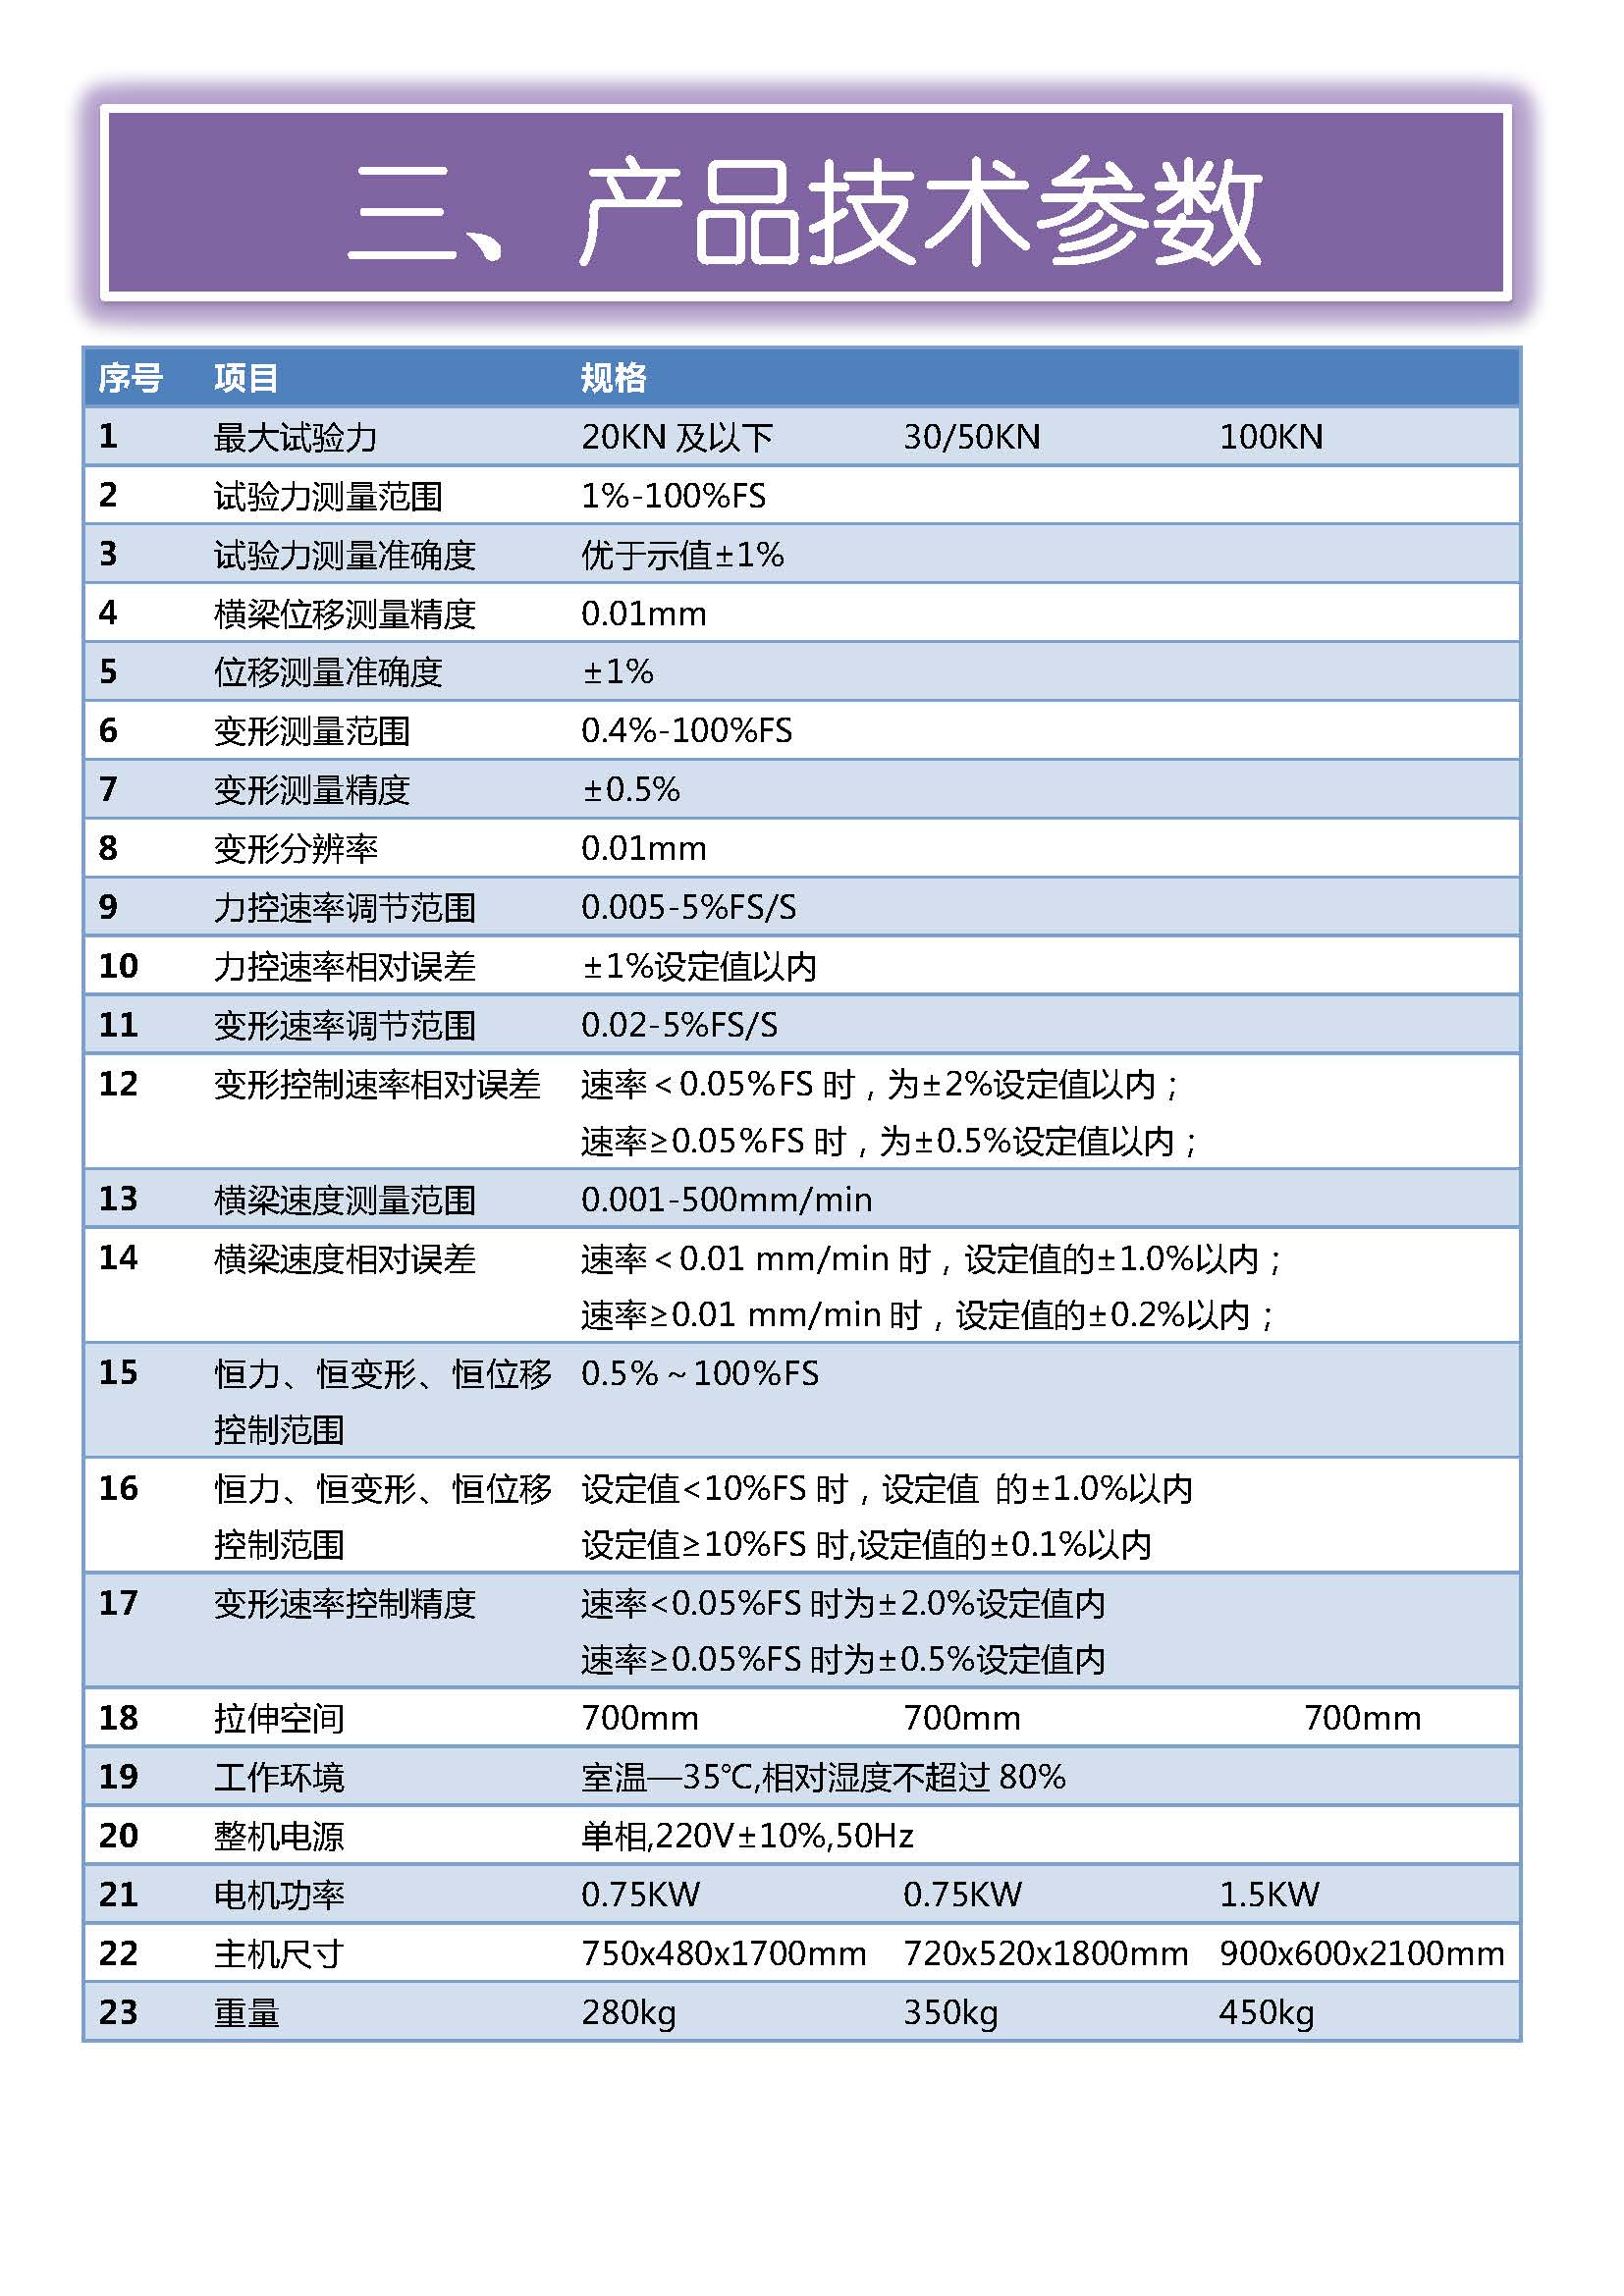 微机门式-国产配置 中文 所有型号_页面_04.jpg